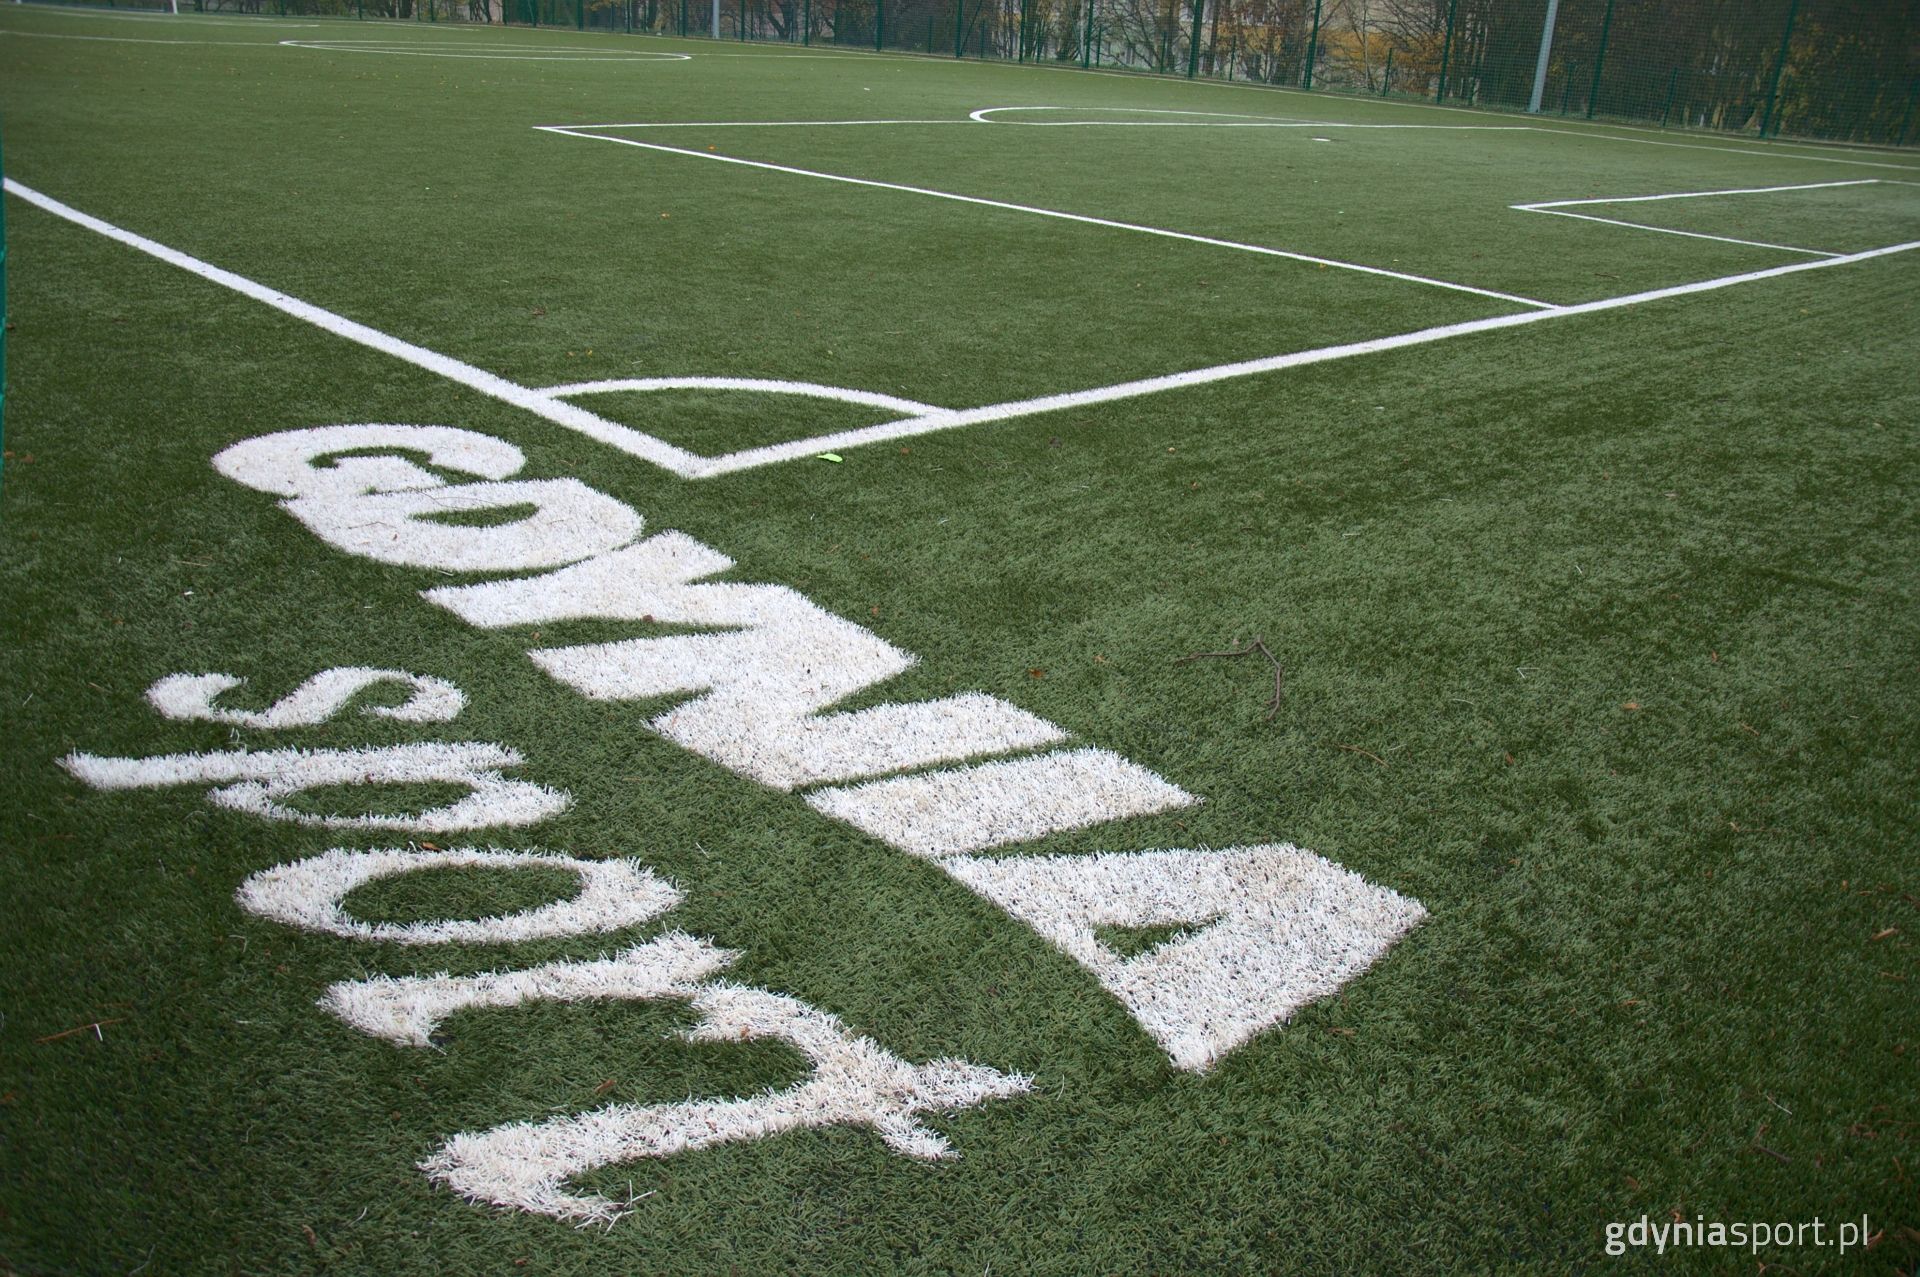 napis "Gdynia Sport" na trawie 